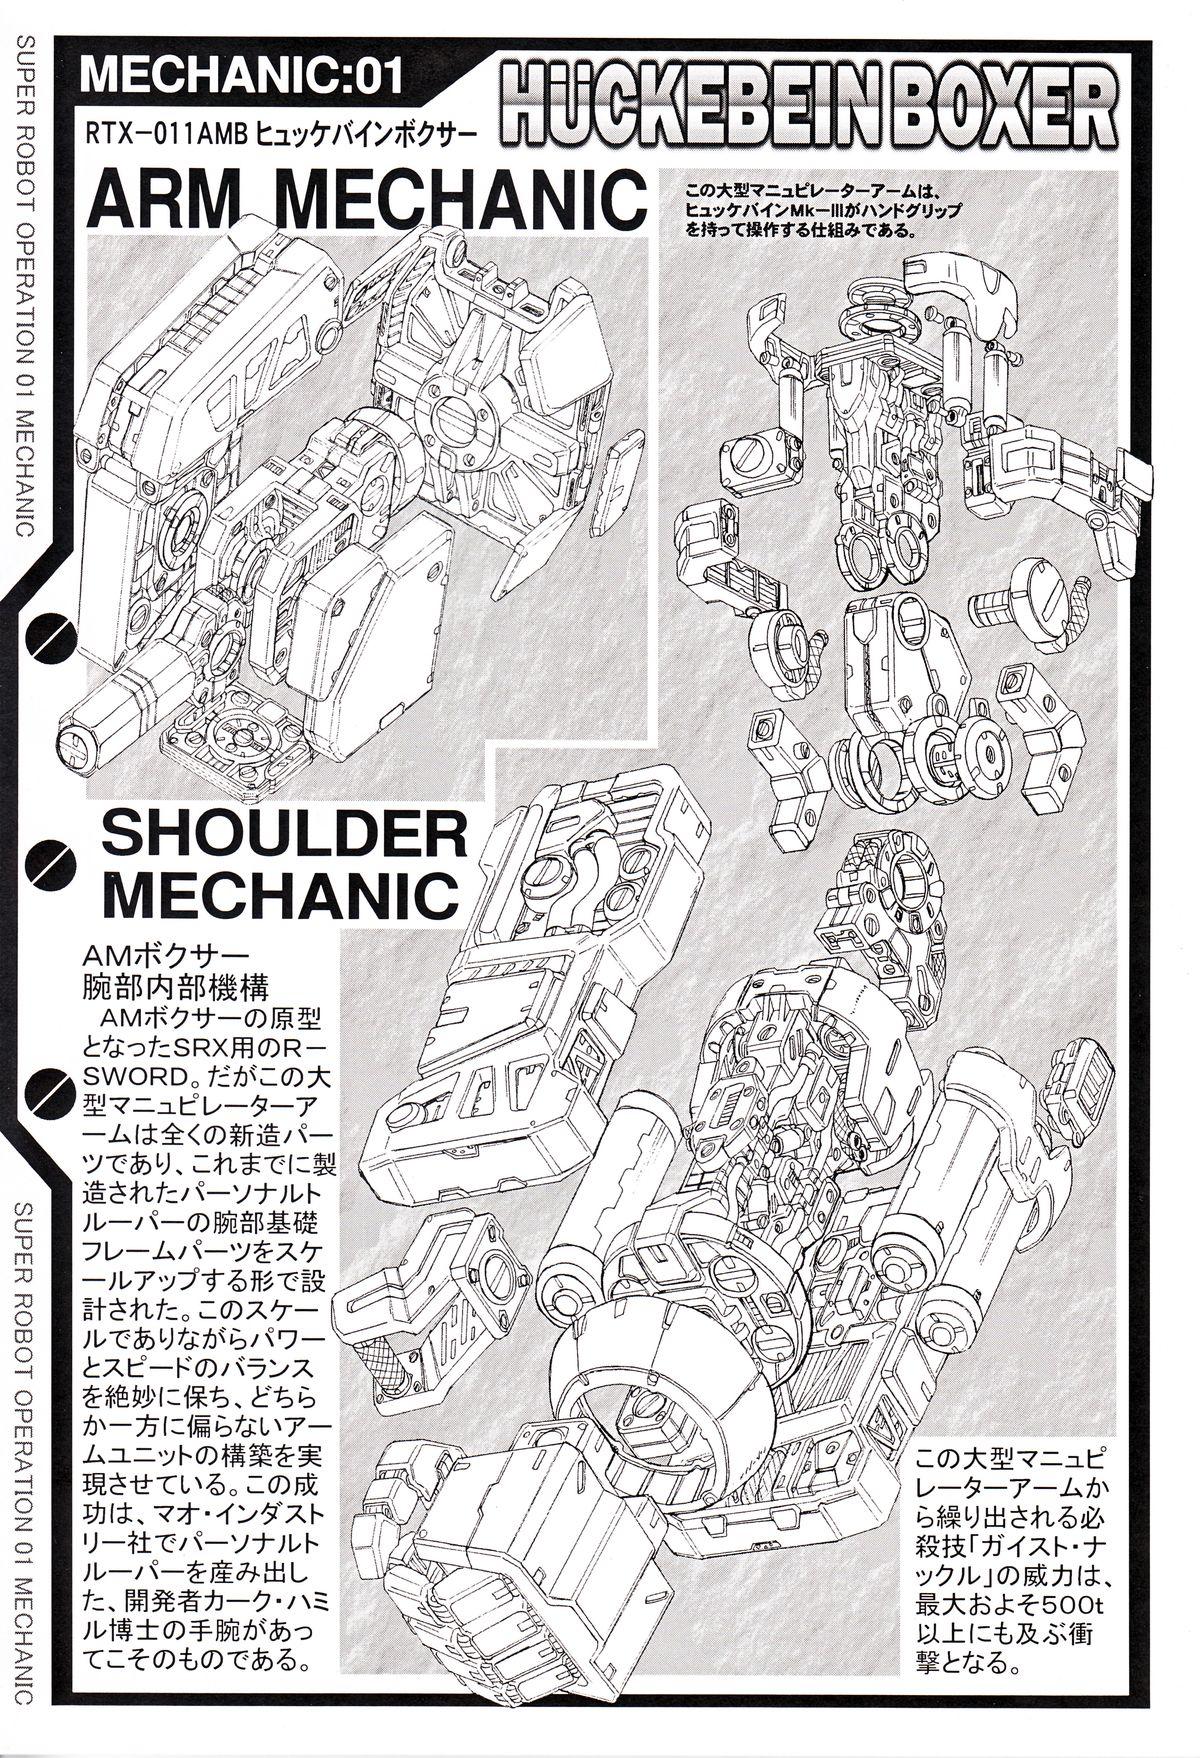 Stud SUPER ROBOT OPERATION 01 - Super robot wars Gaogaigar Full metal panic Patlabor Voltes v Blue comet spt layzner Pack - Page 11